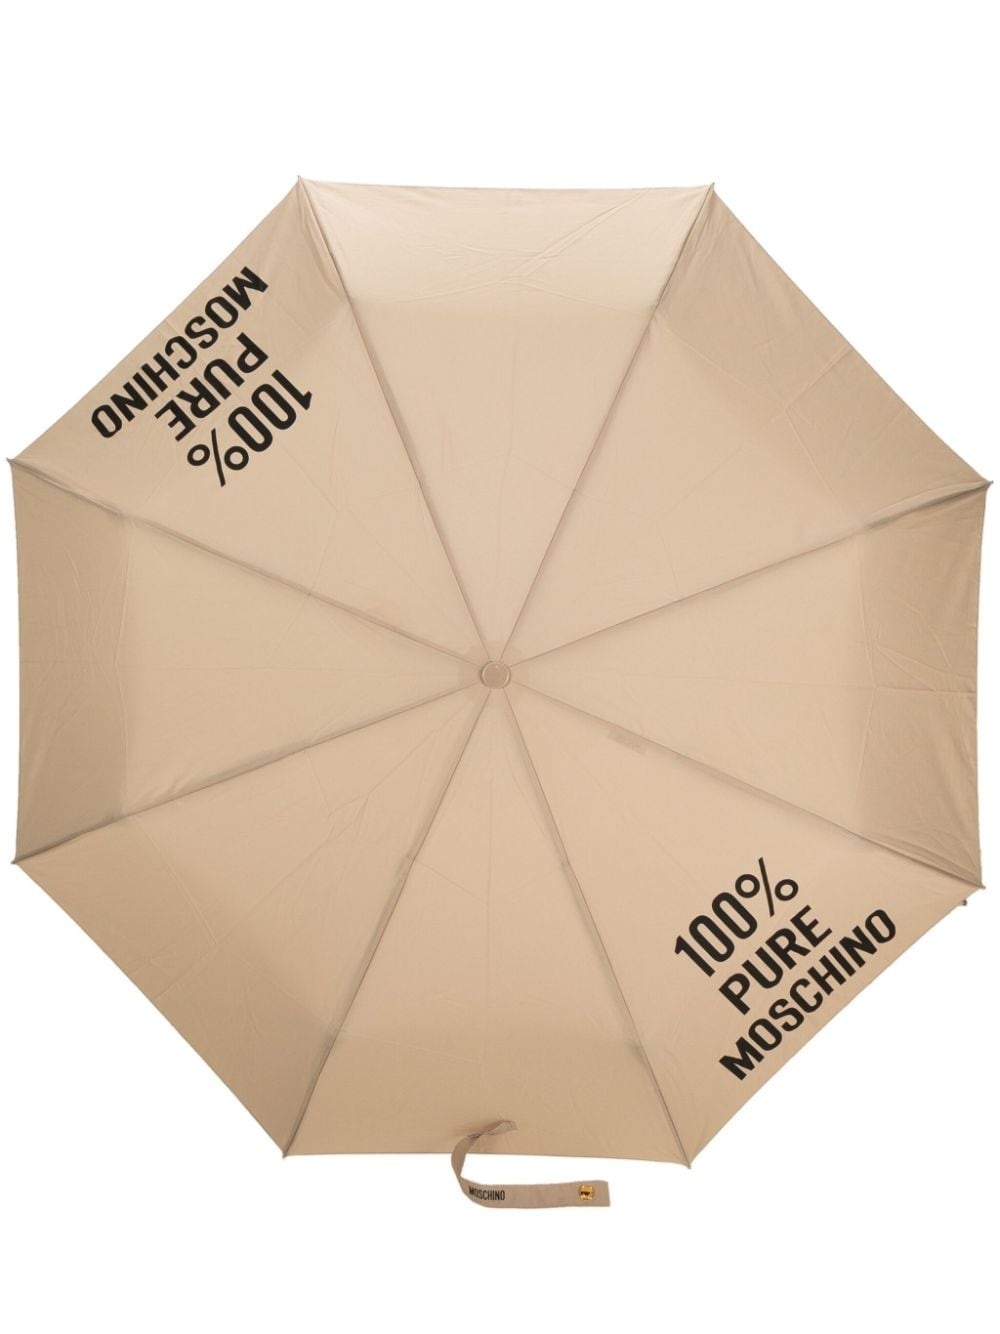 slogan-print foldable umbrella - 1